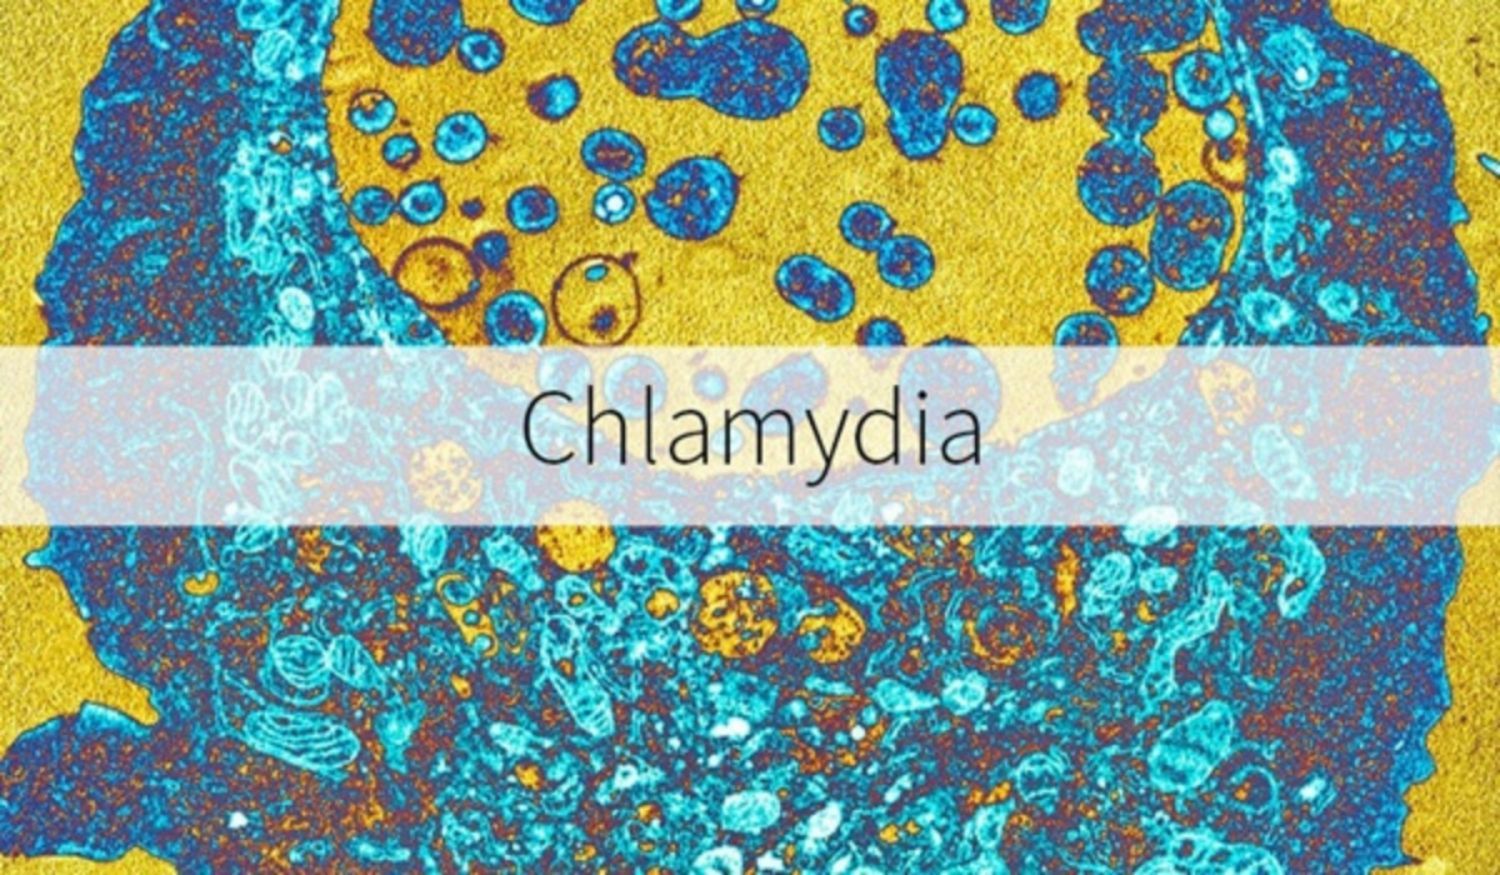 Sau bao lâu thì chlamydia biểu hiện triệu chứng?